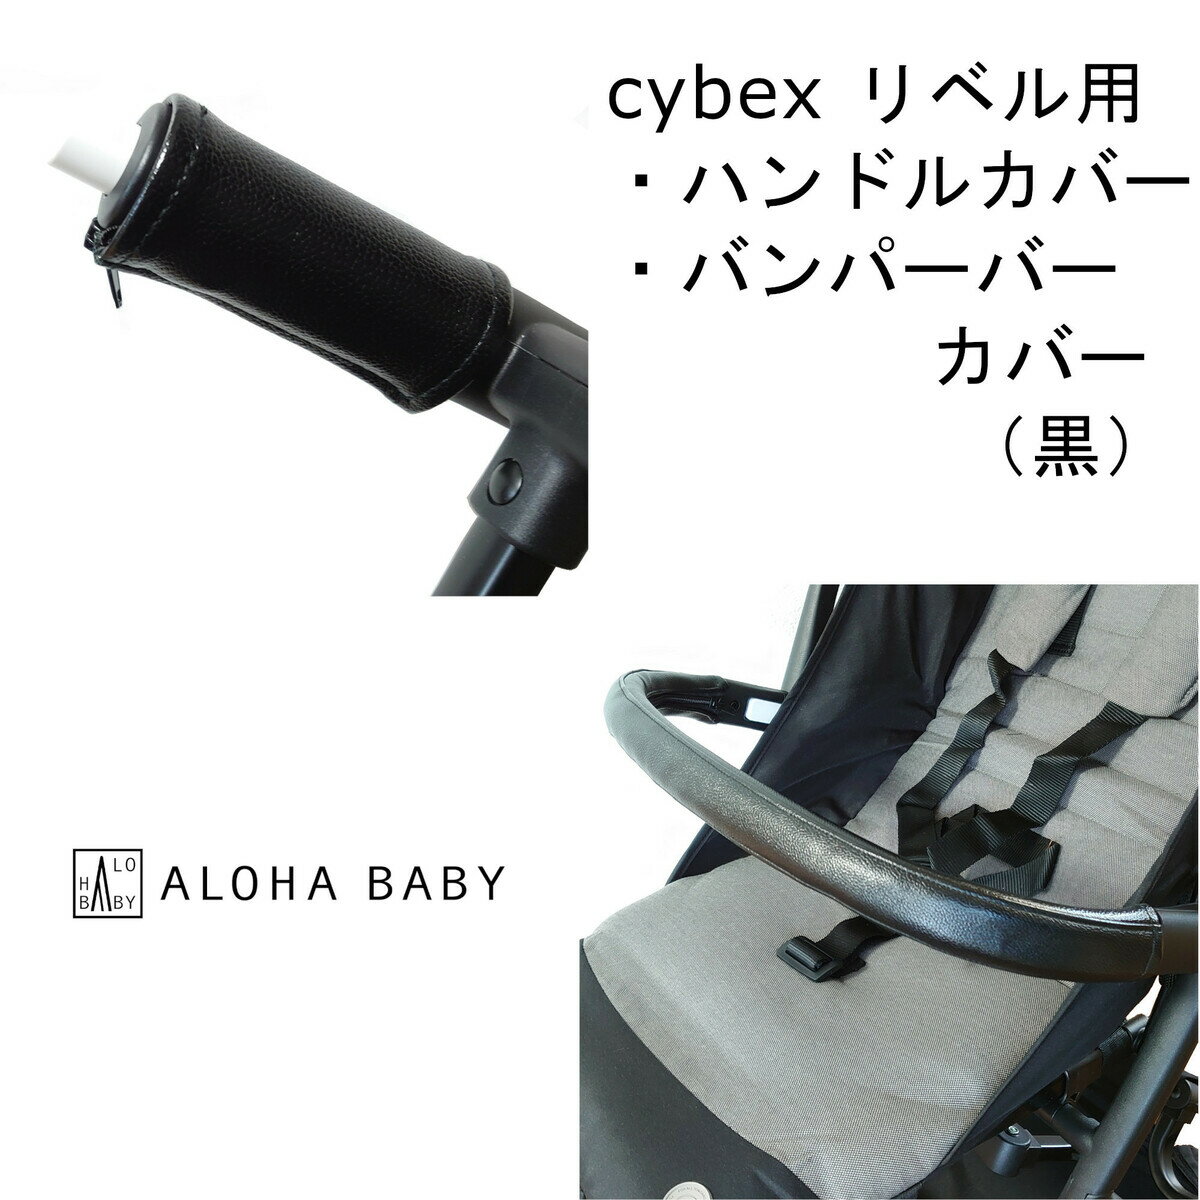 cybex リベル用 LIBELLE用 ハンドルカバ